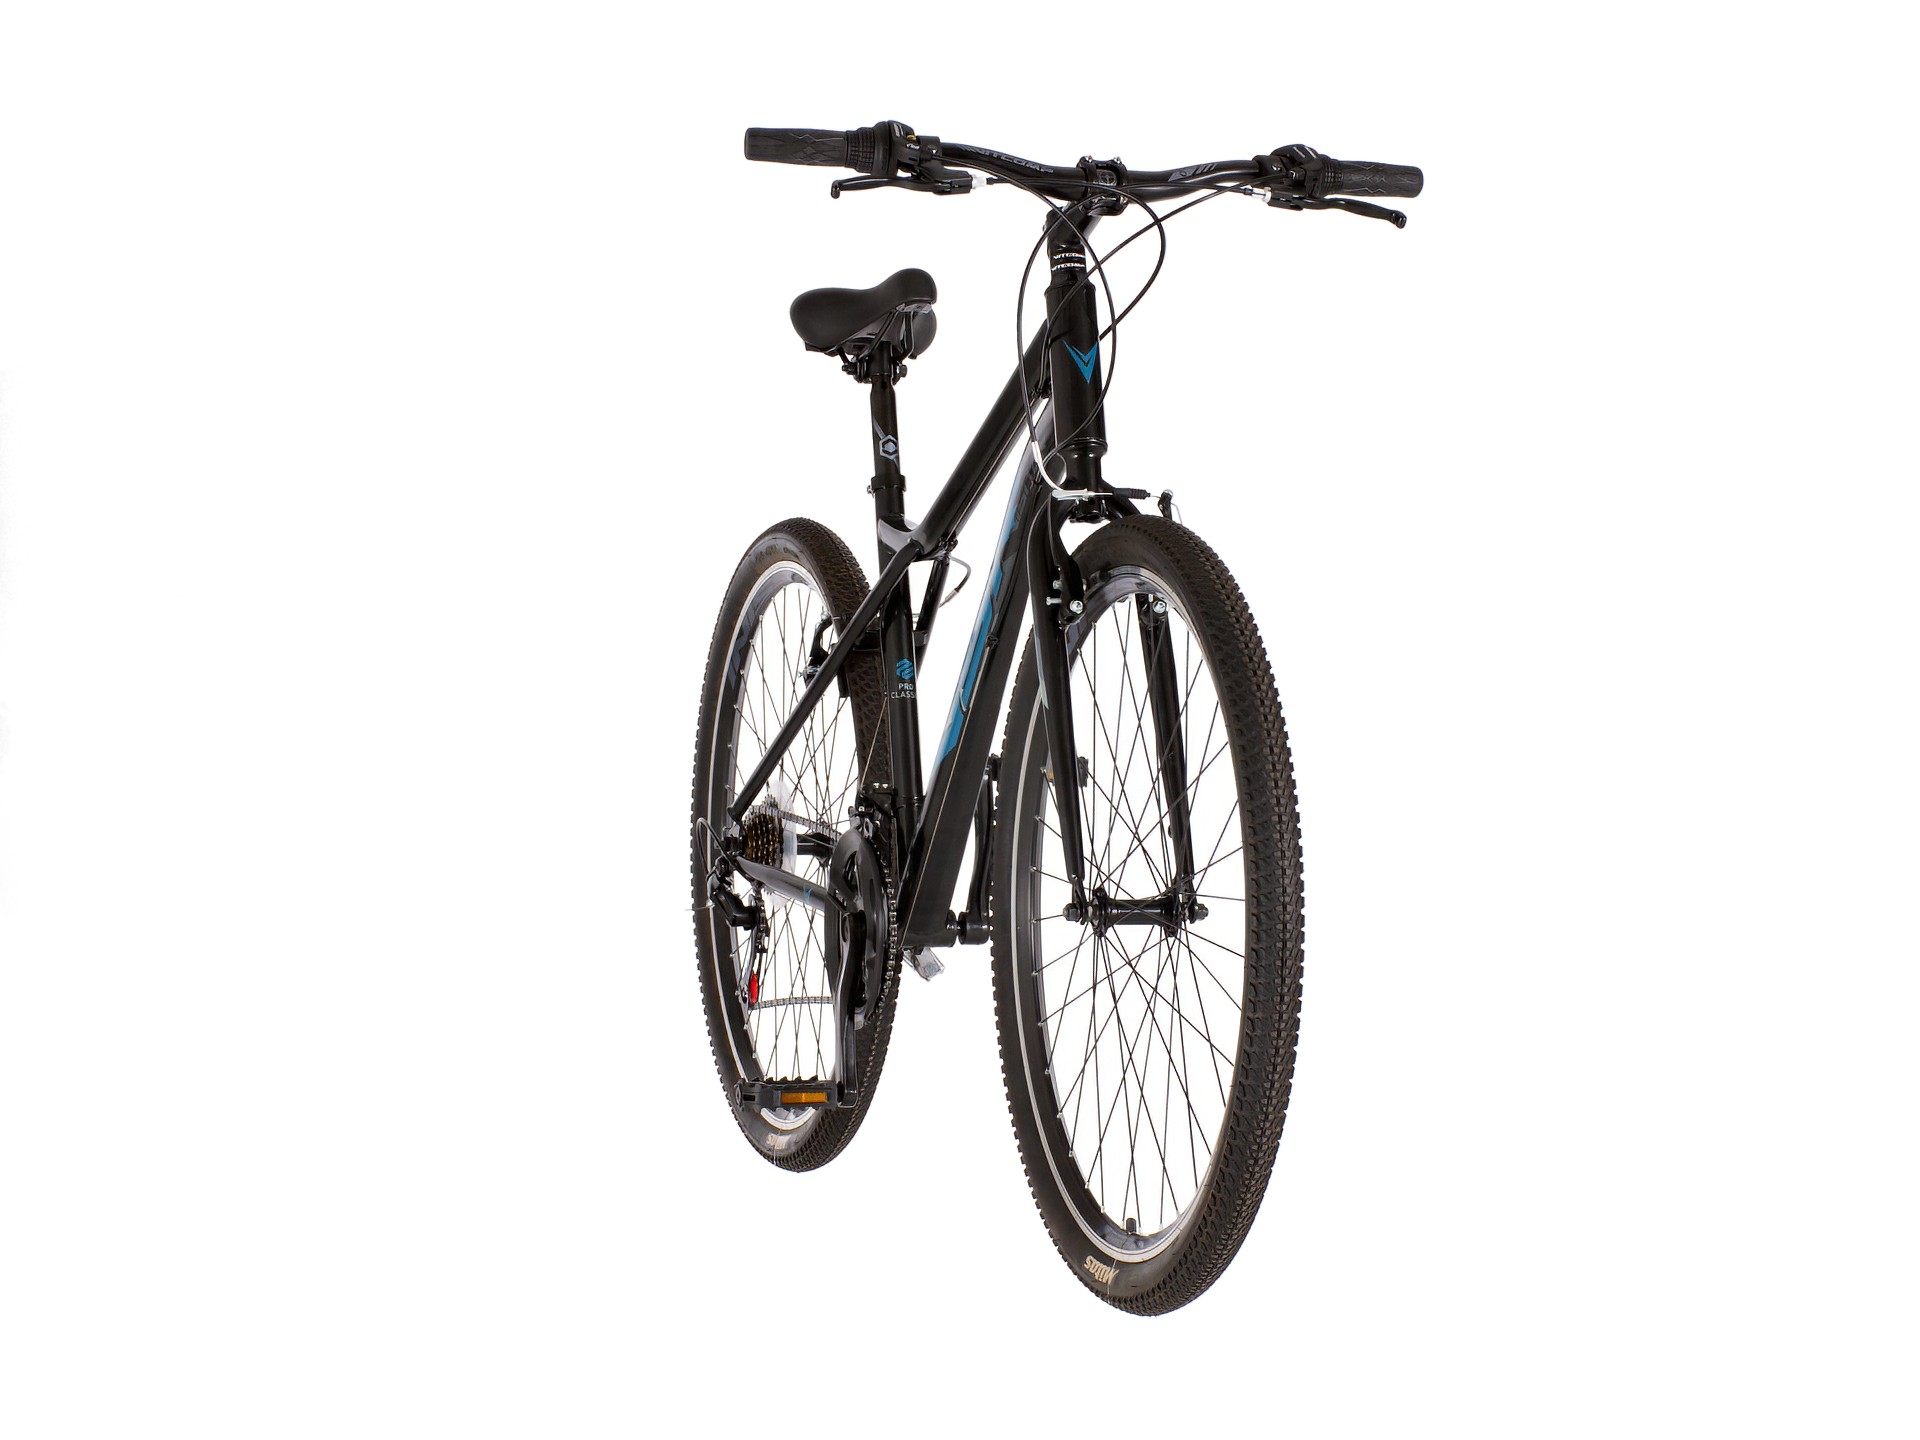 Crno siva proclassic bicikla -procla290